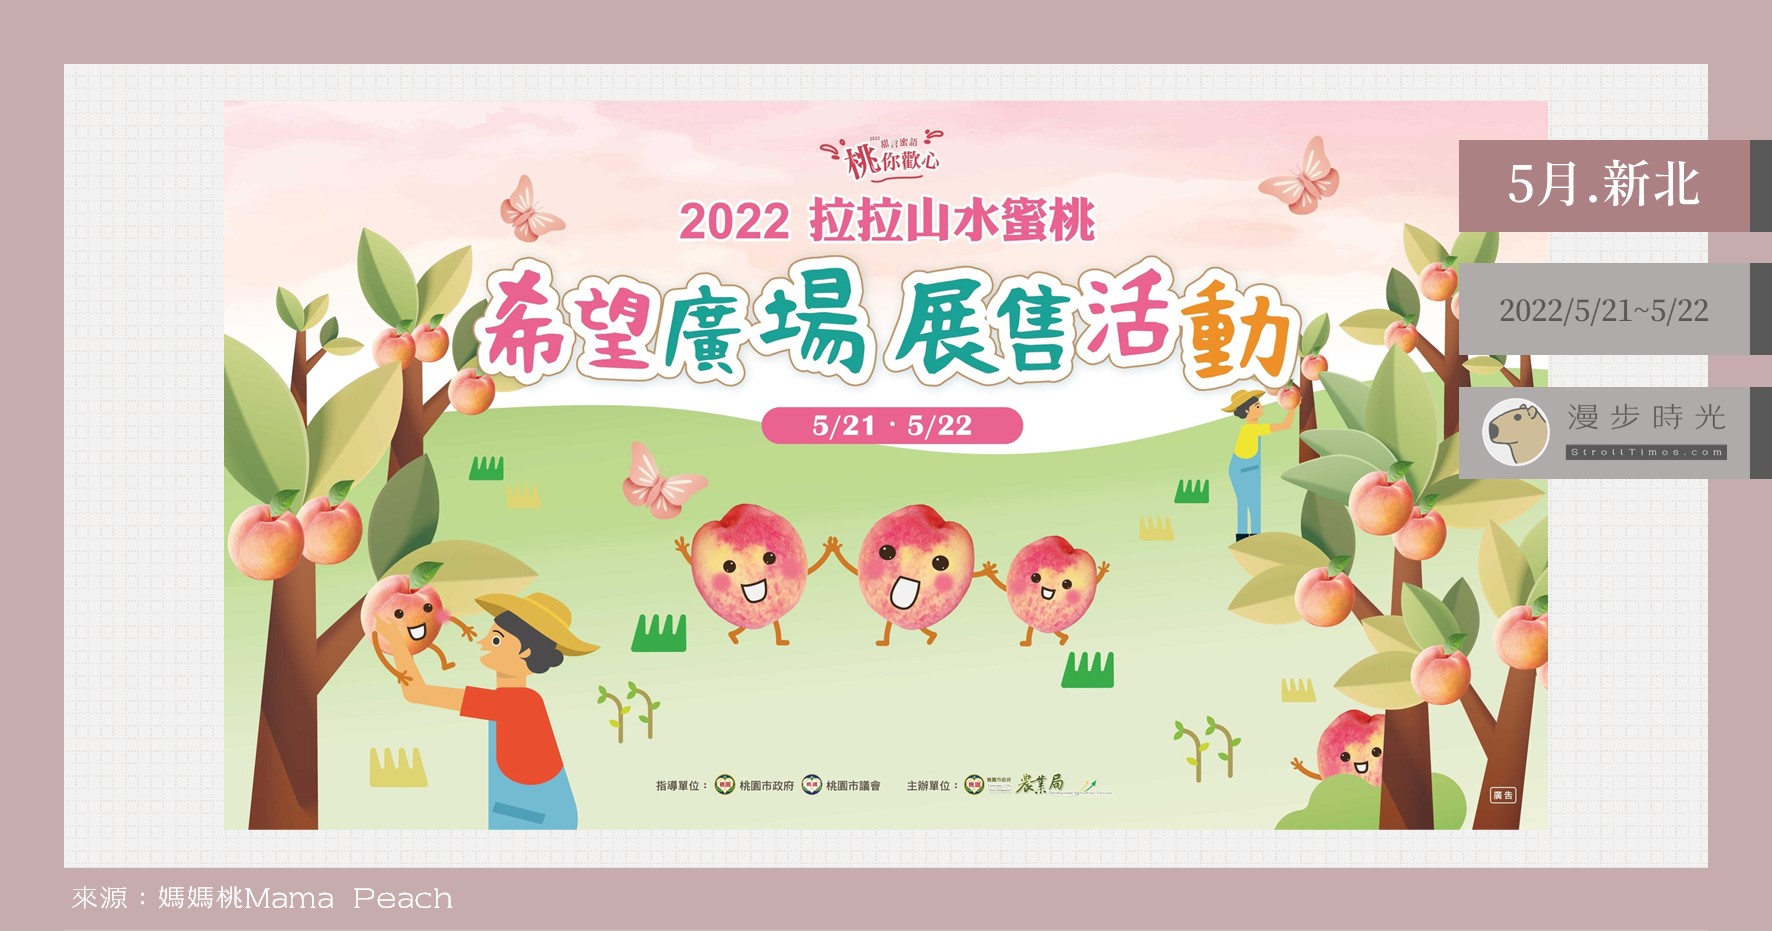 台北也能直購拉拉山水蜜桃！「2022拉拉山水蜜桃希望廣場展售活動」兩天快閃，也能預定快取 @漫步時光